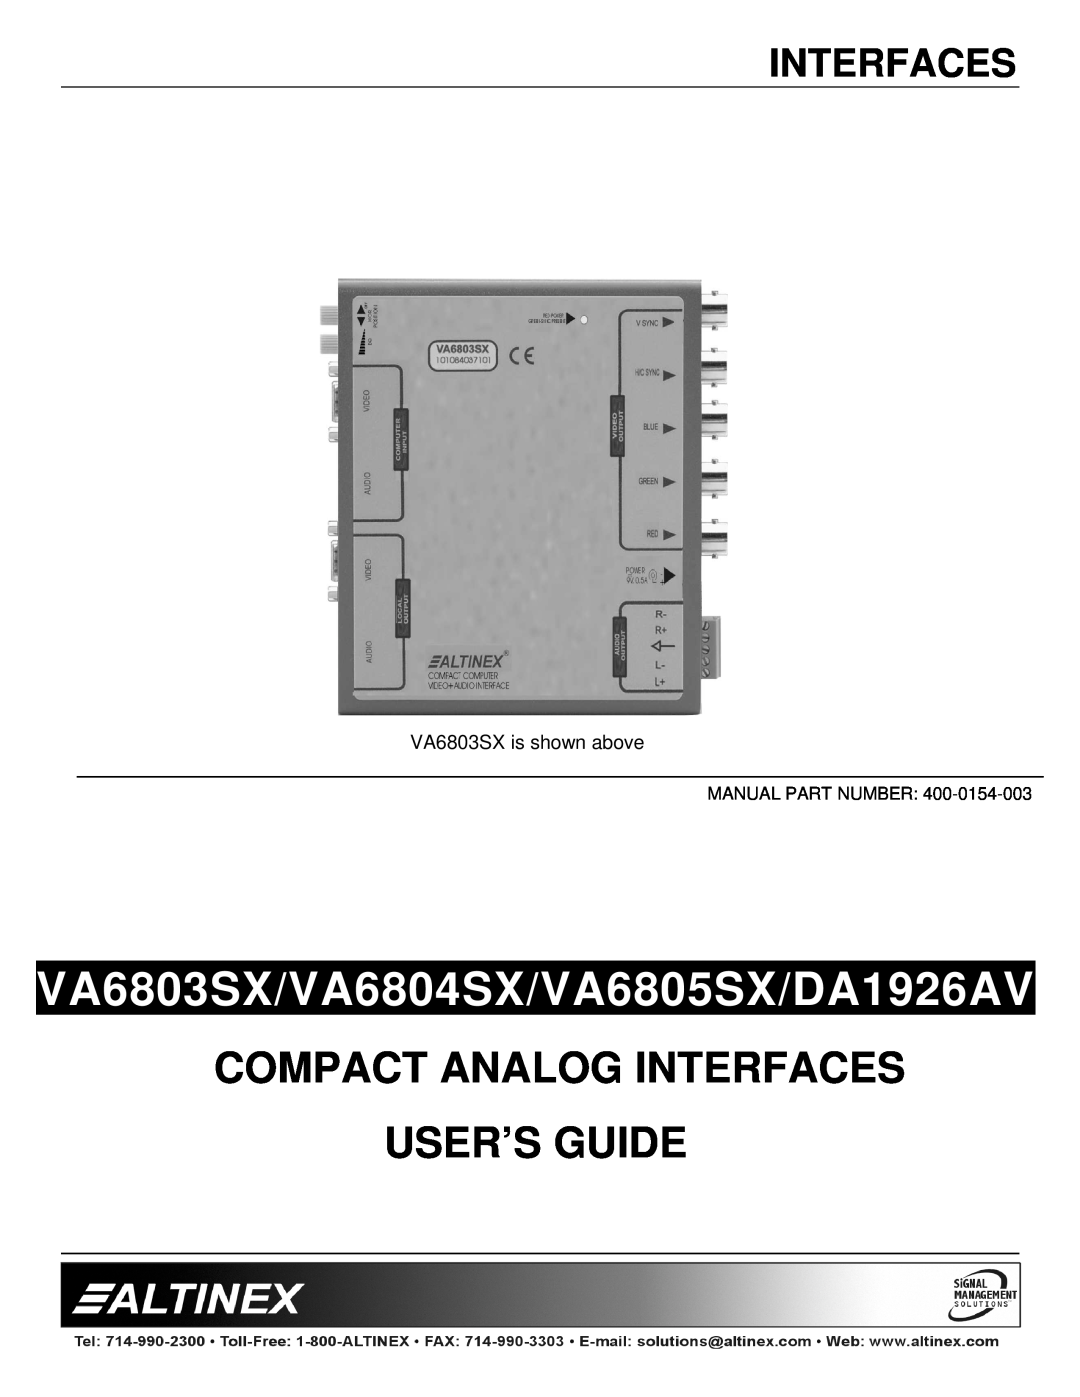 Altinex manual VA6803SX/VA6804SX/VA6805SX/DA1926AV, Compact Analog Interfaces User’S Guide 